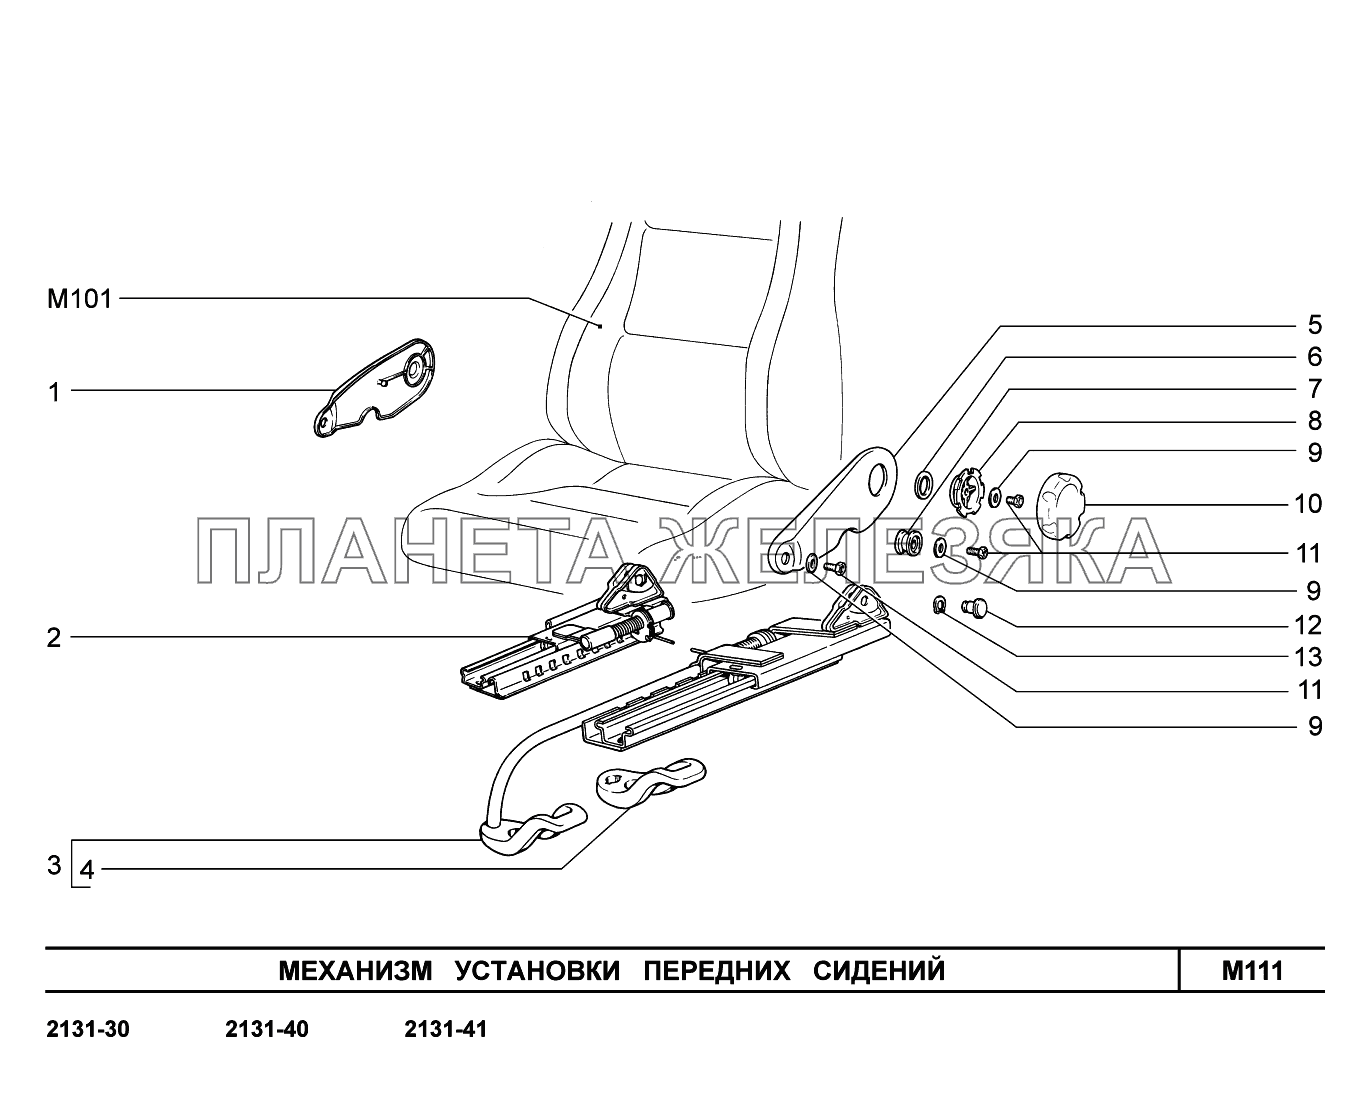 M111. Механизм установки передних сидений LADA 4x4